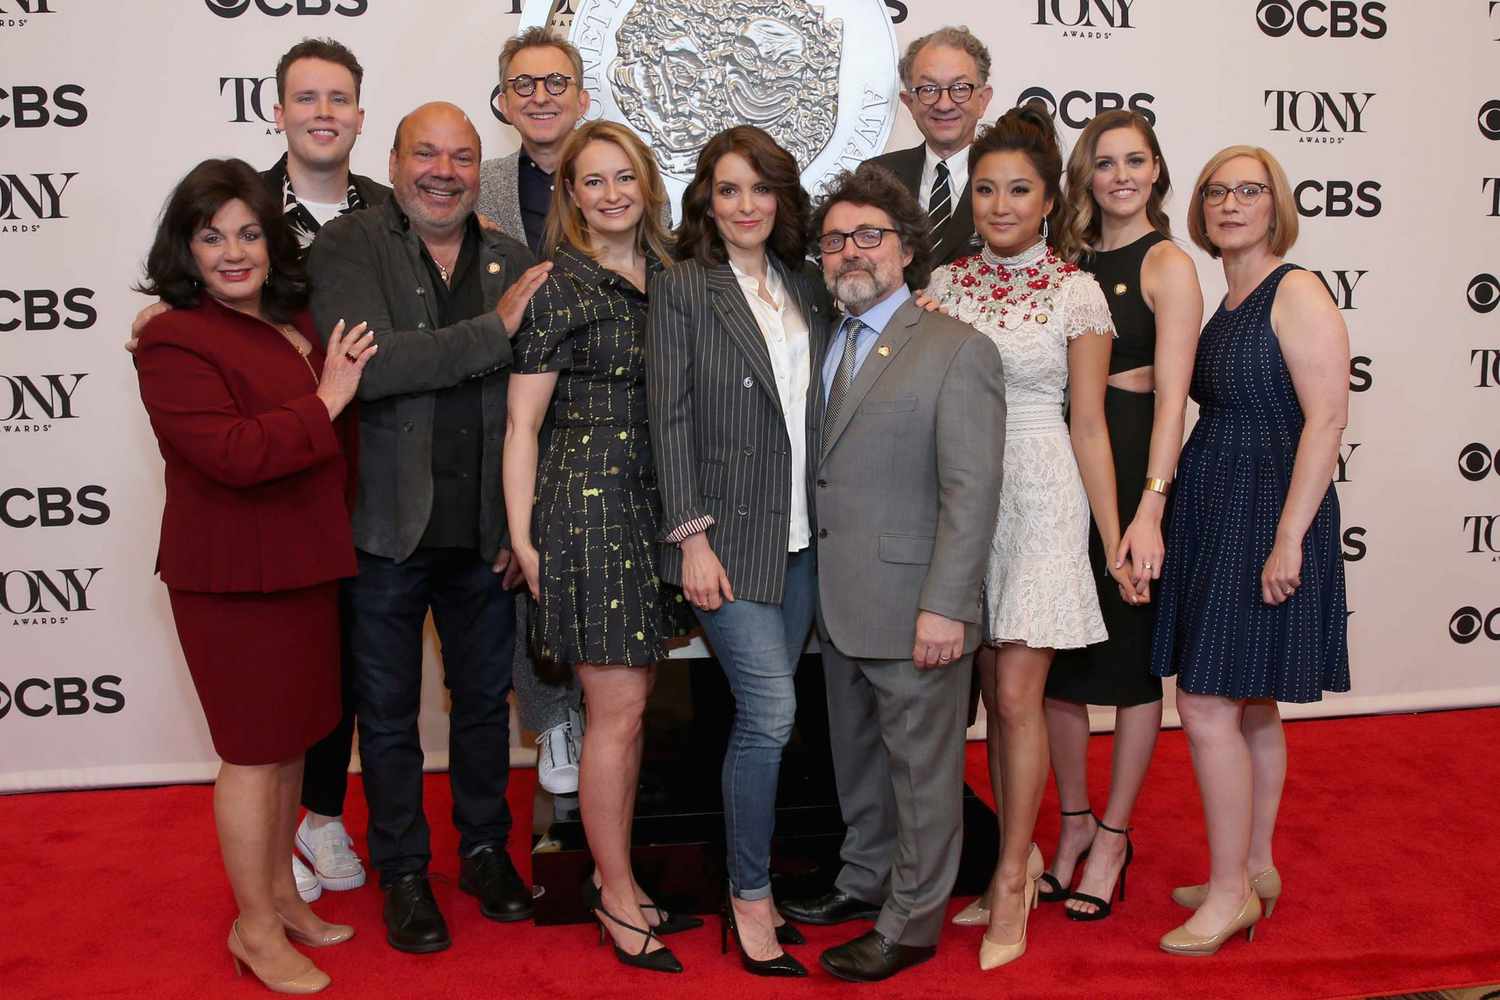 Meet the 2018 Tony Awards nominees